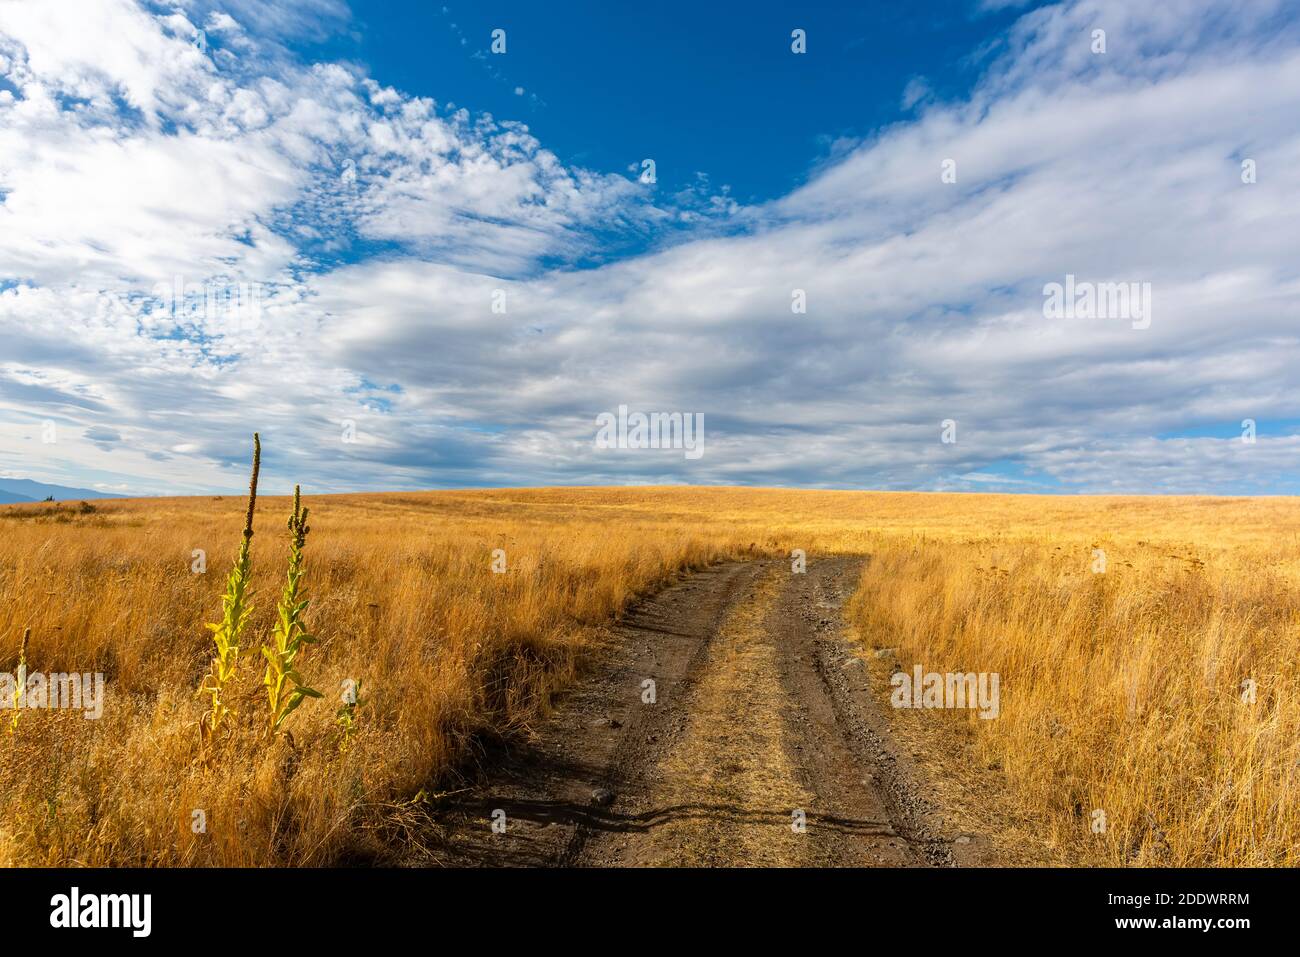 Strada sterrata nella steppa tra erba gialla, cielo blu con nuvole bianche sullo sfondo. Foto Stock